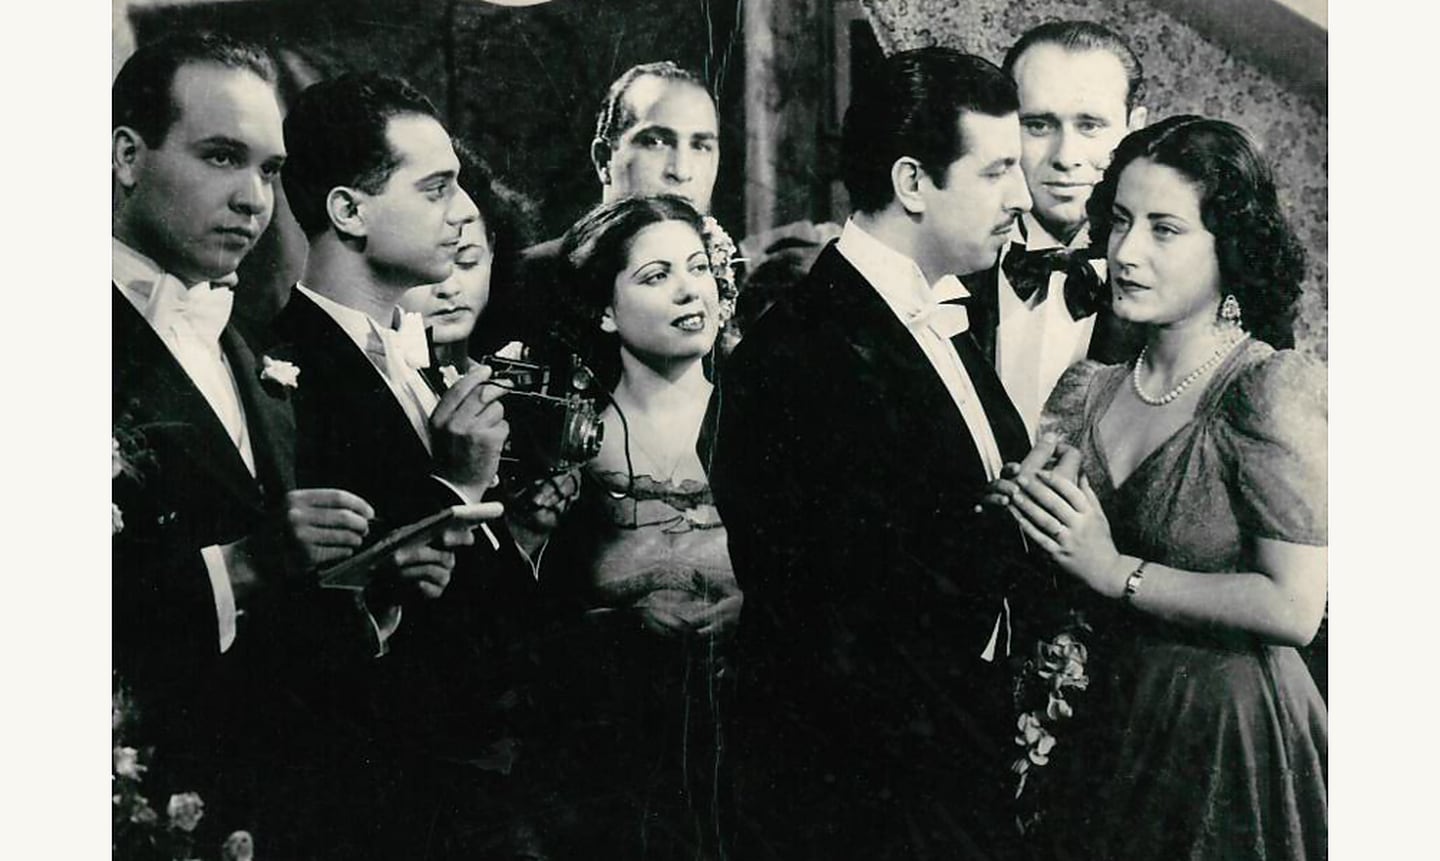 Asmahan i spillefilmen "Kjærlighet eller hevn" fra 1944.